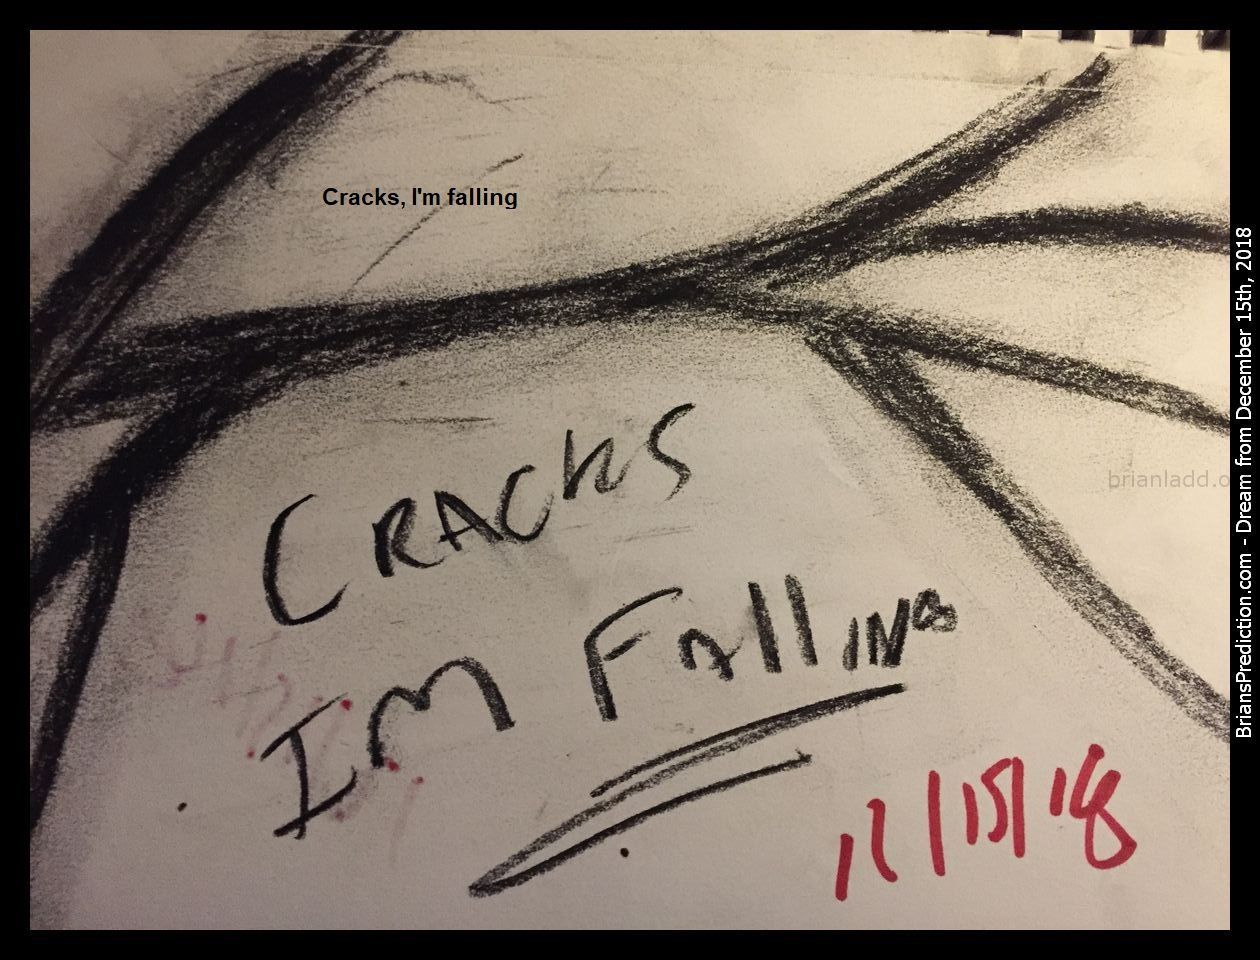 11466 15 December 2018 8 - Cracks, I'M Falling  Dream Number 11466 15 December 2018 8 Psychic Prediction...
Cracks, I'M Falling  Dream Number 11466 15 December 2018 8 Psychic Prediction
